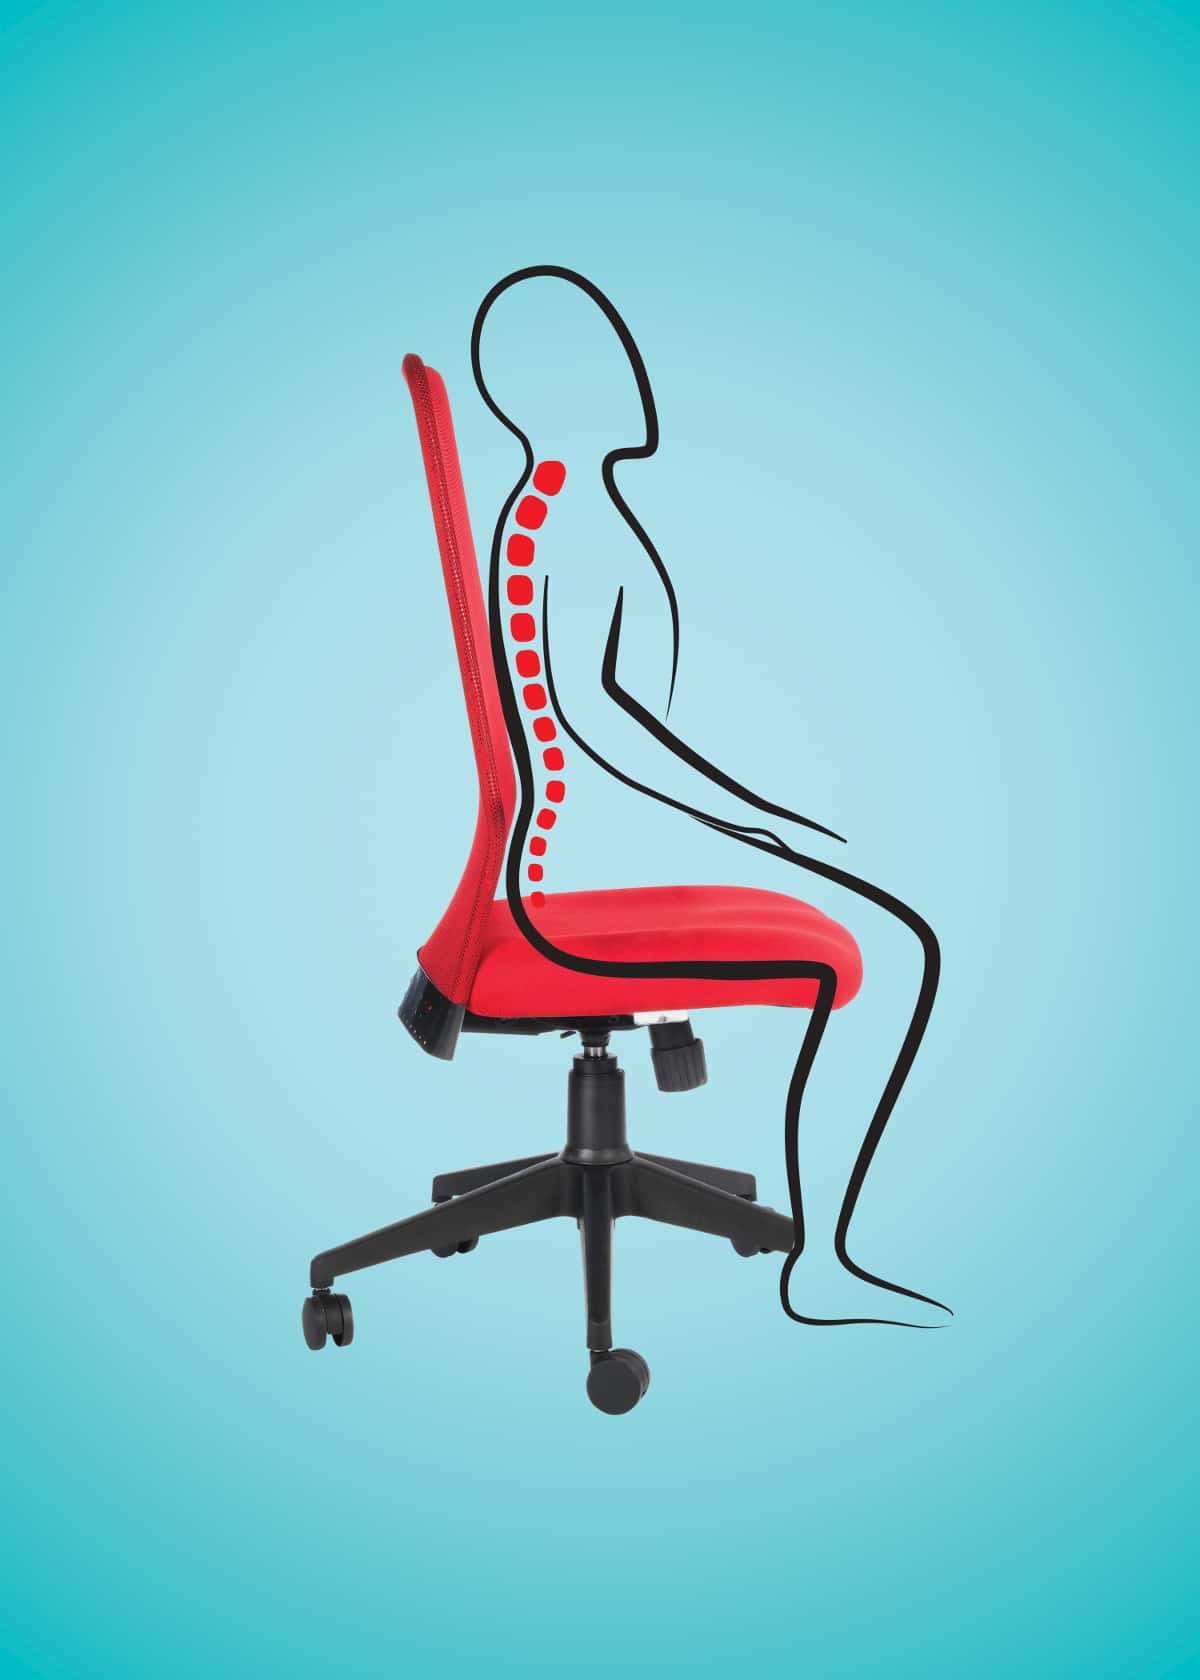 Ghế công thái học ergonomic: Sự trải nghiệm thoải mái và lành mạnh trong công việc hàng ngày